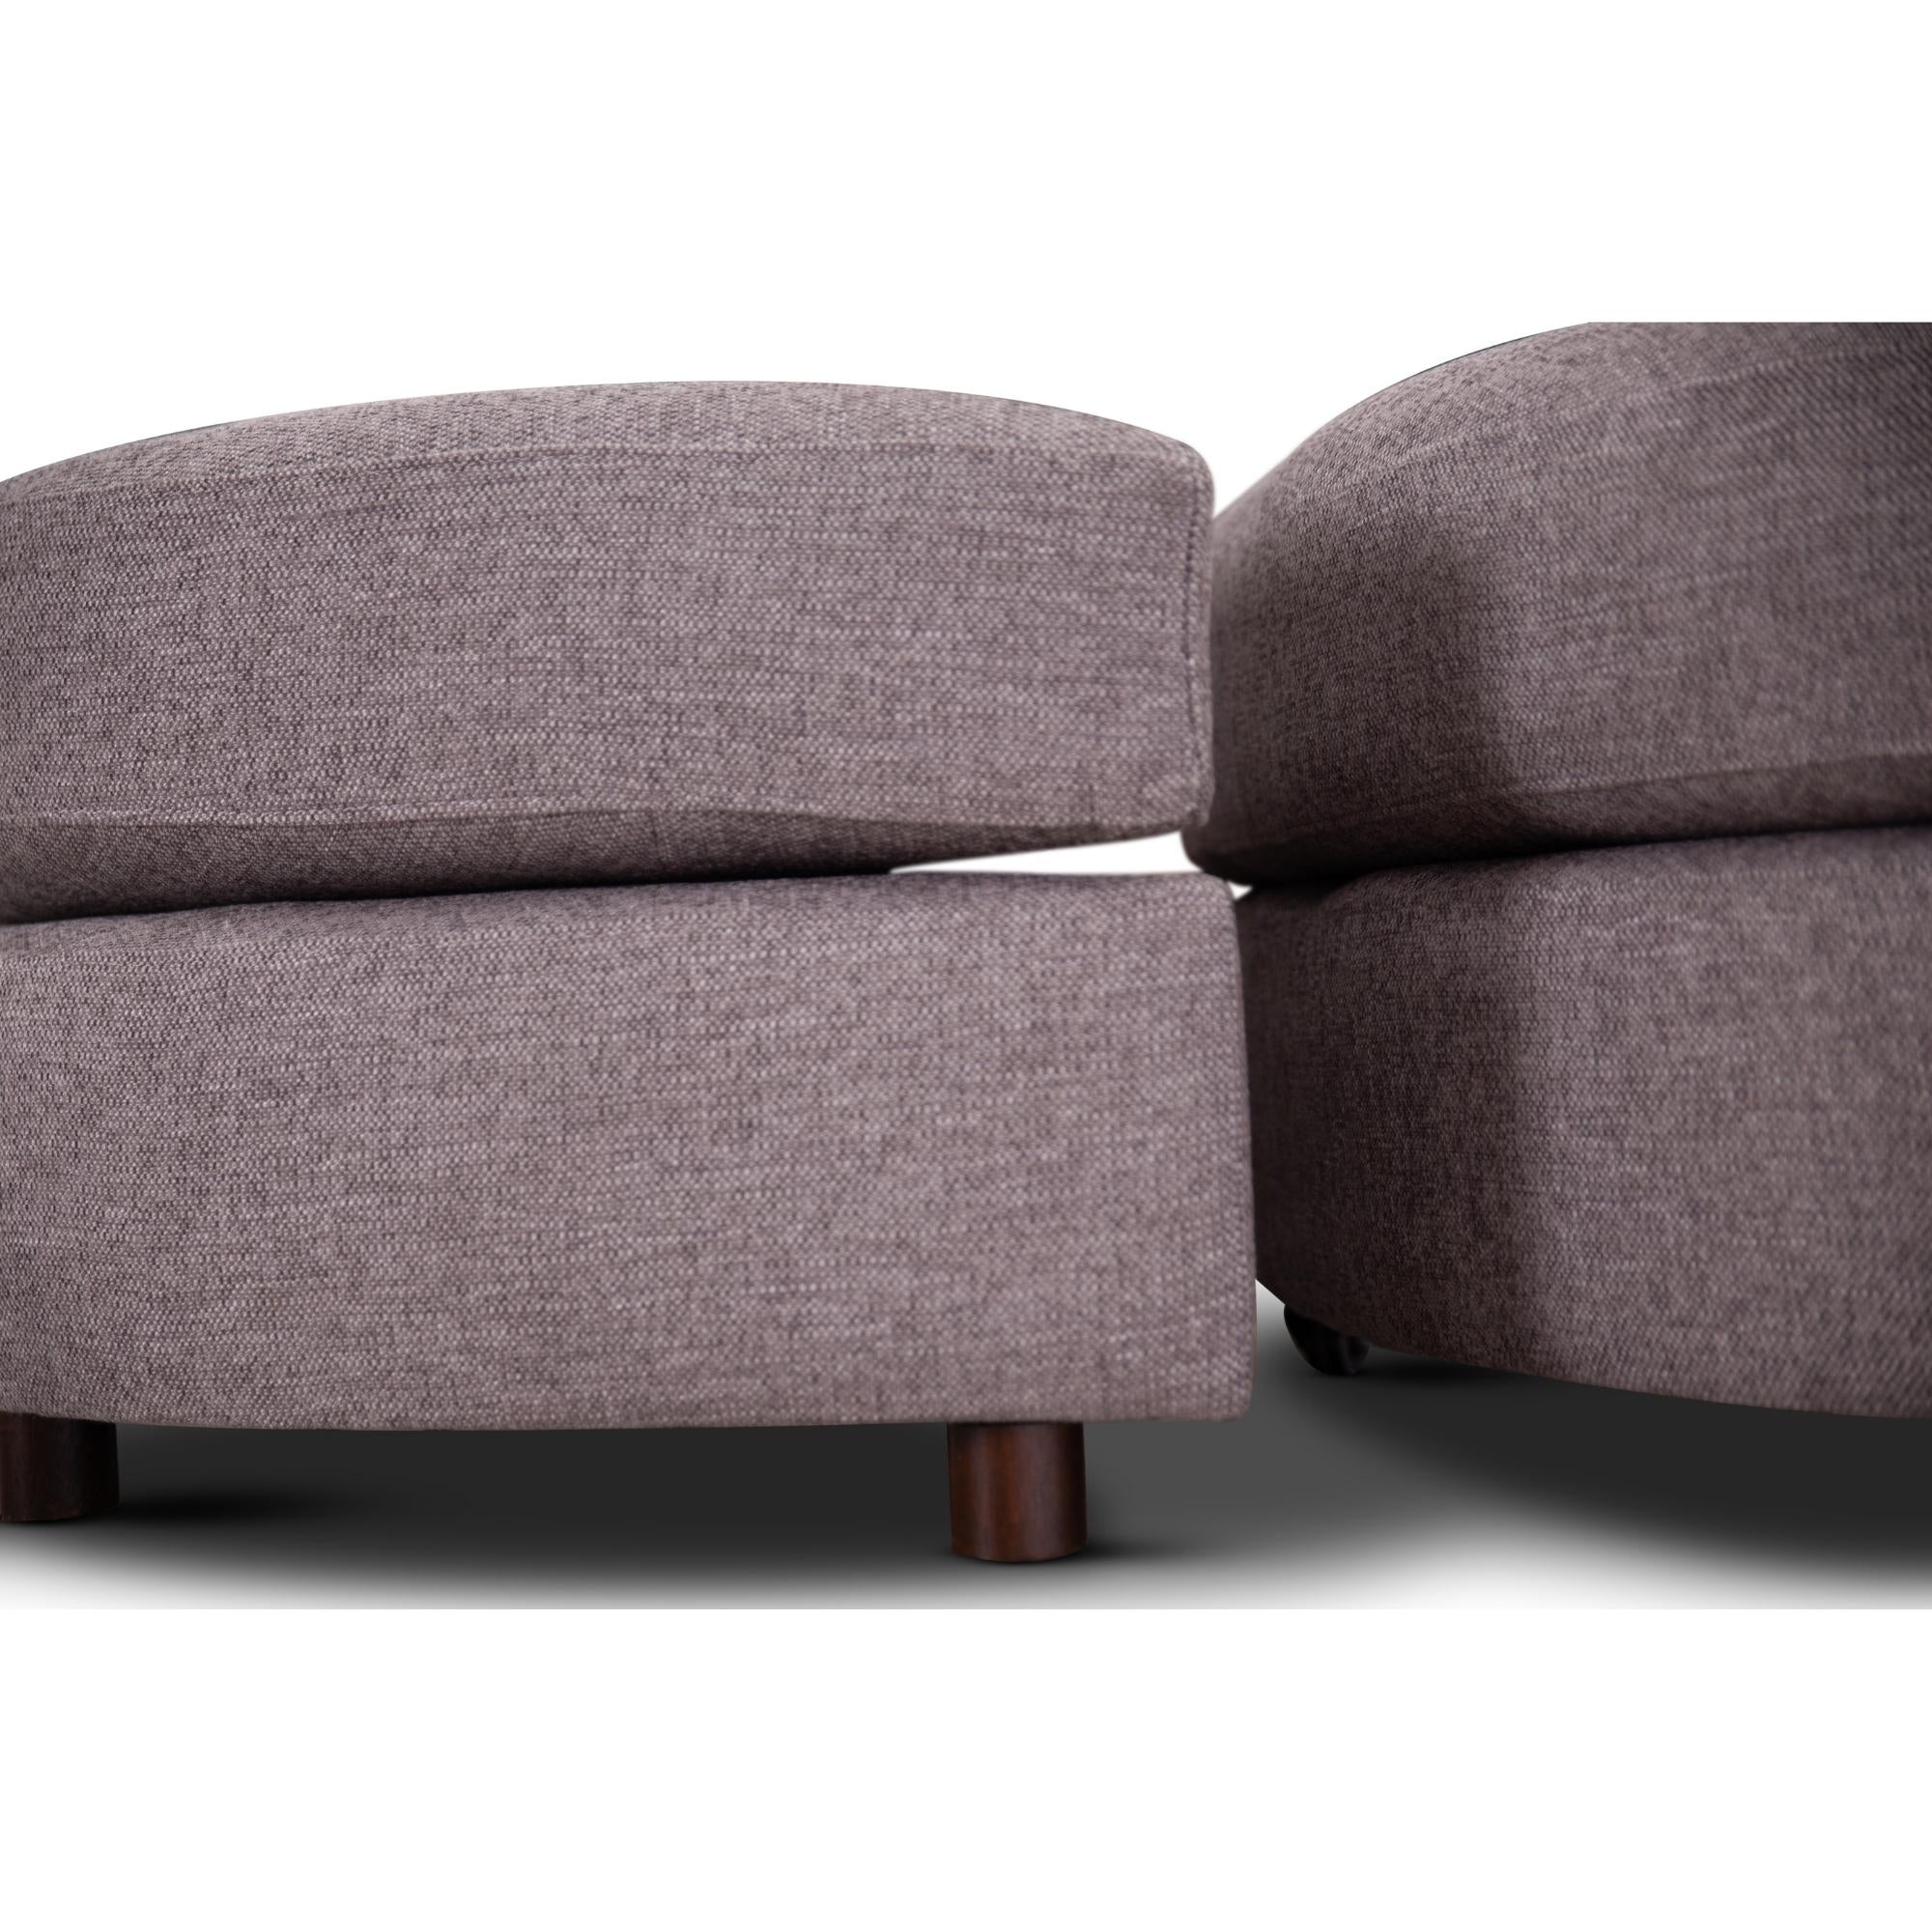 Sunshine Single Sofa Chair Fabric Swivel Ottoman - Grey Deals499